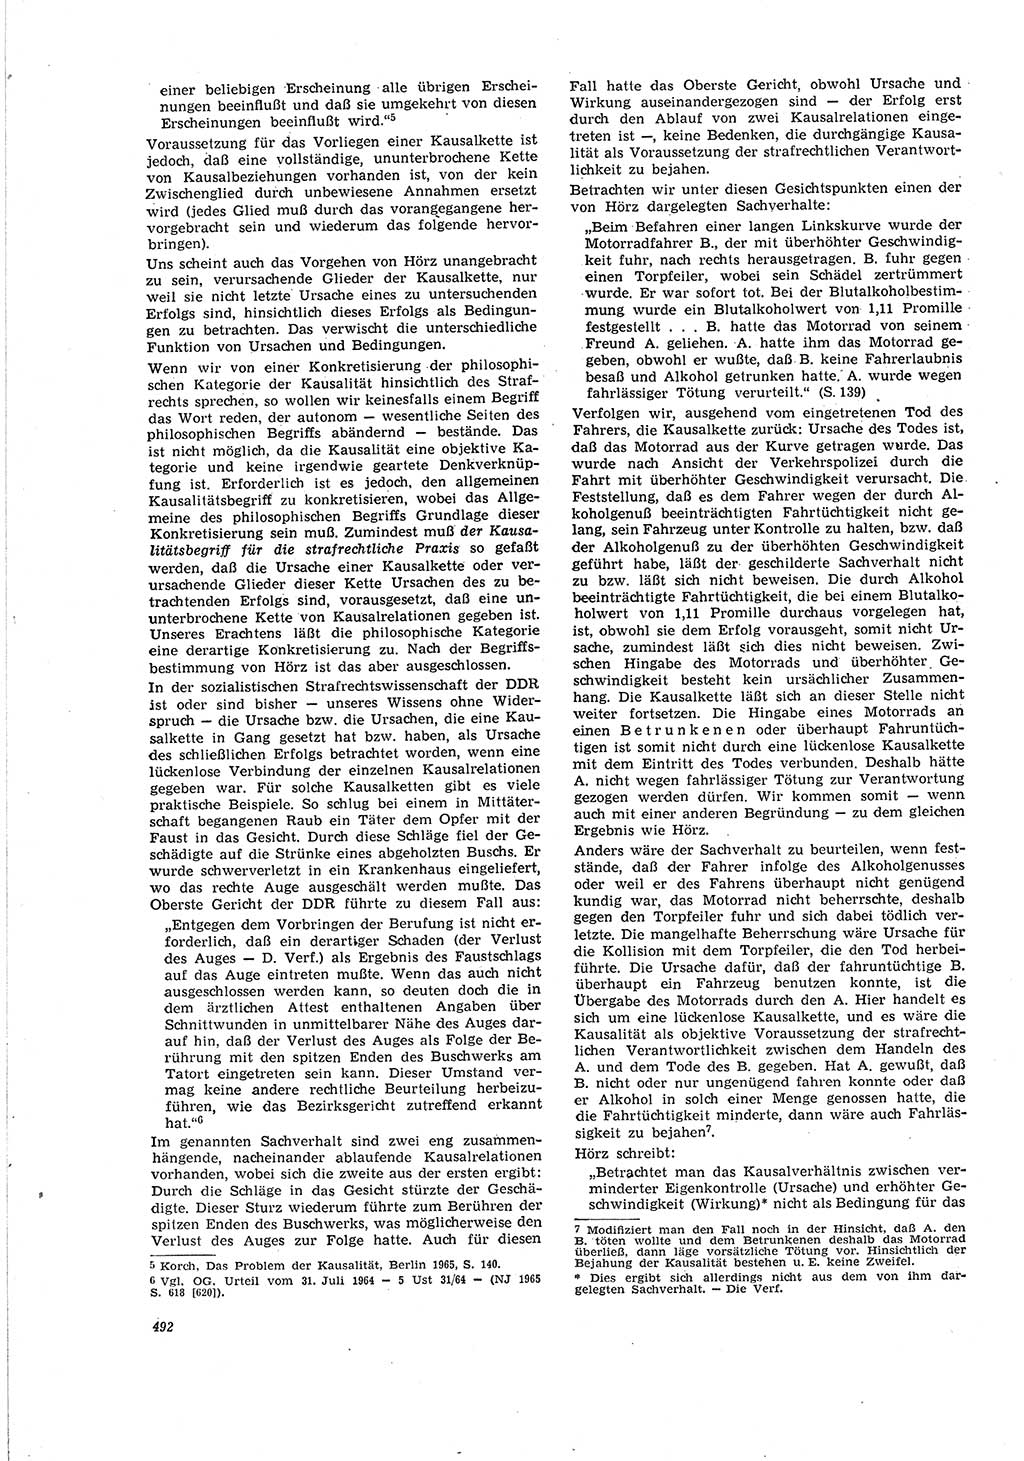 Neue Justiz (NJ), Zeitschrift für Recht und Rechtswissenschaft [Deutsche Demokratische Republik (DDR)], 20. Jahrgang 1966, Seite 492 (NJ DDR 1966, S. 492)